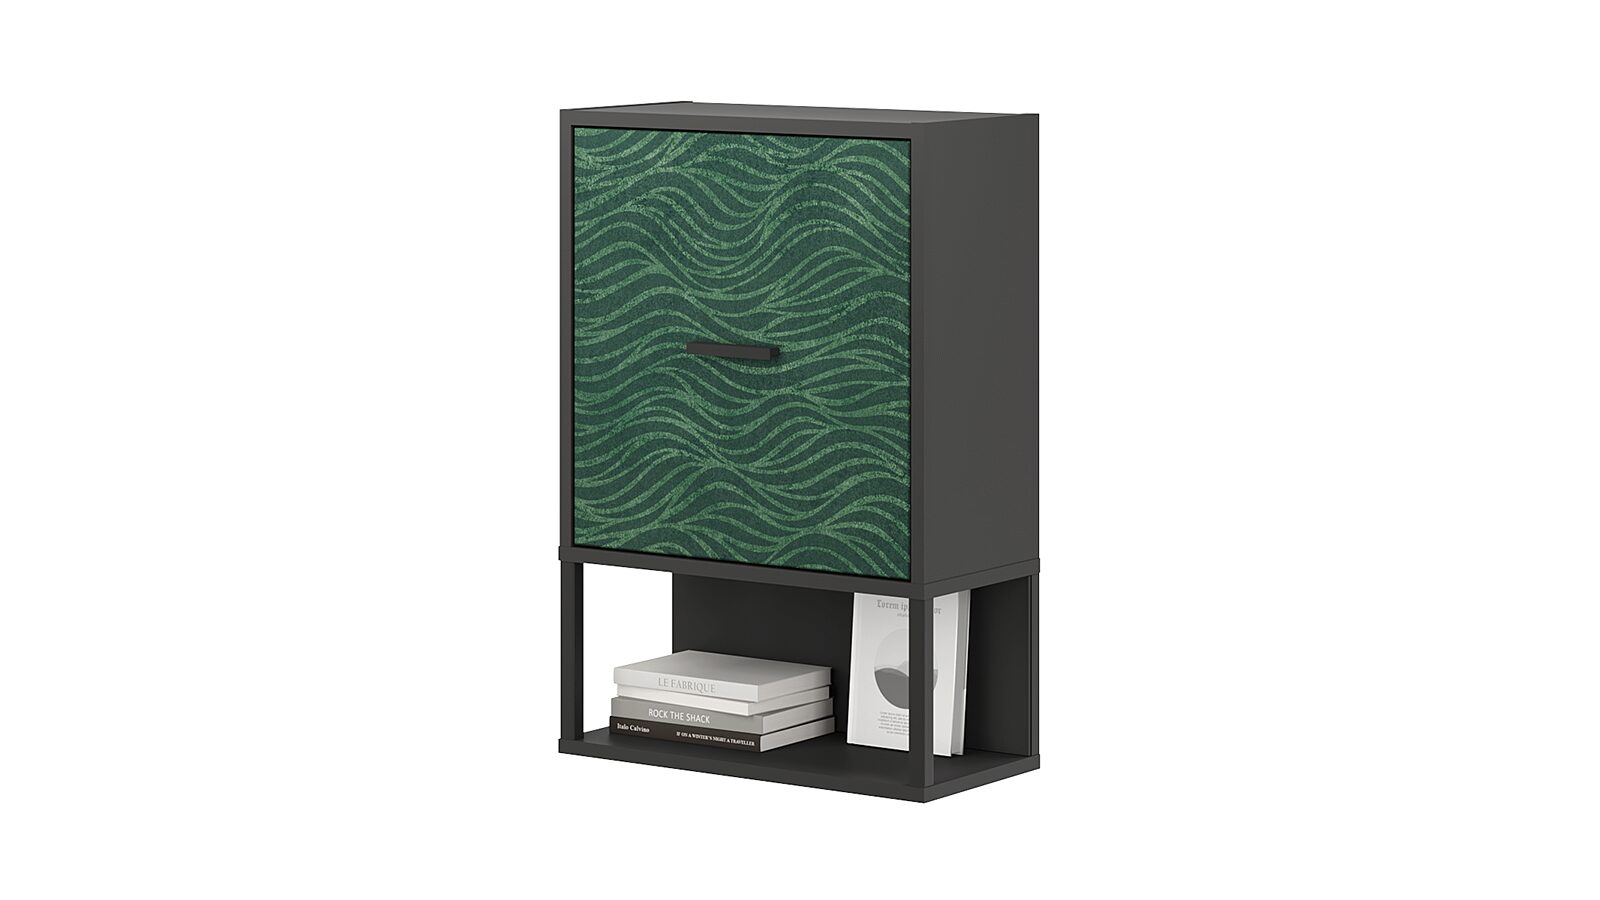 Шкаф навесной Lothar, цвет: Черный Графит + Печать Зеленая волна 1 12 кукольный домик миниатюрная гостиная металлический будильник